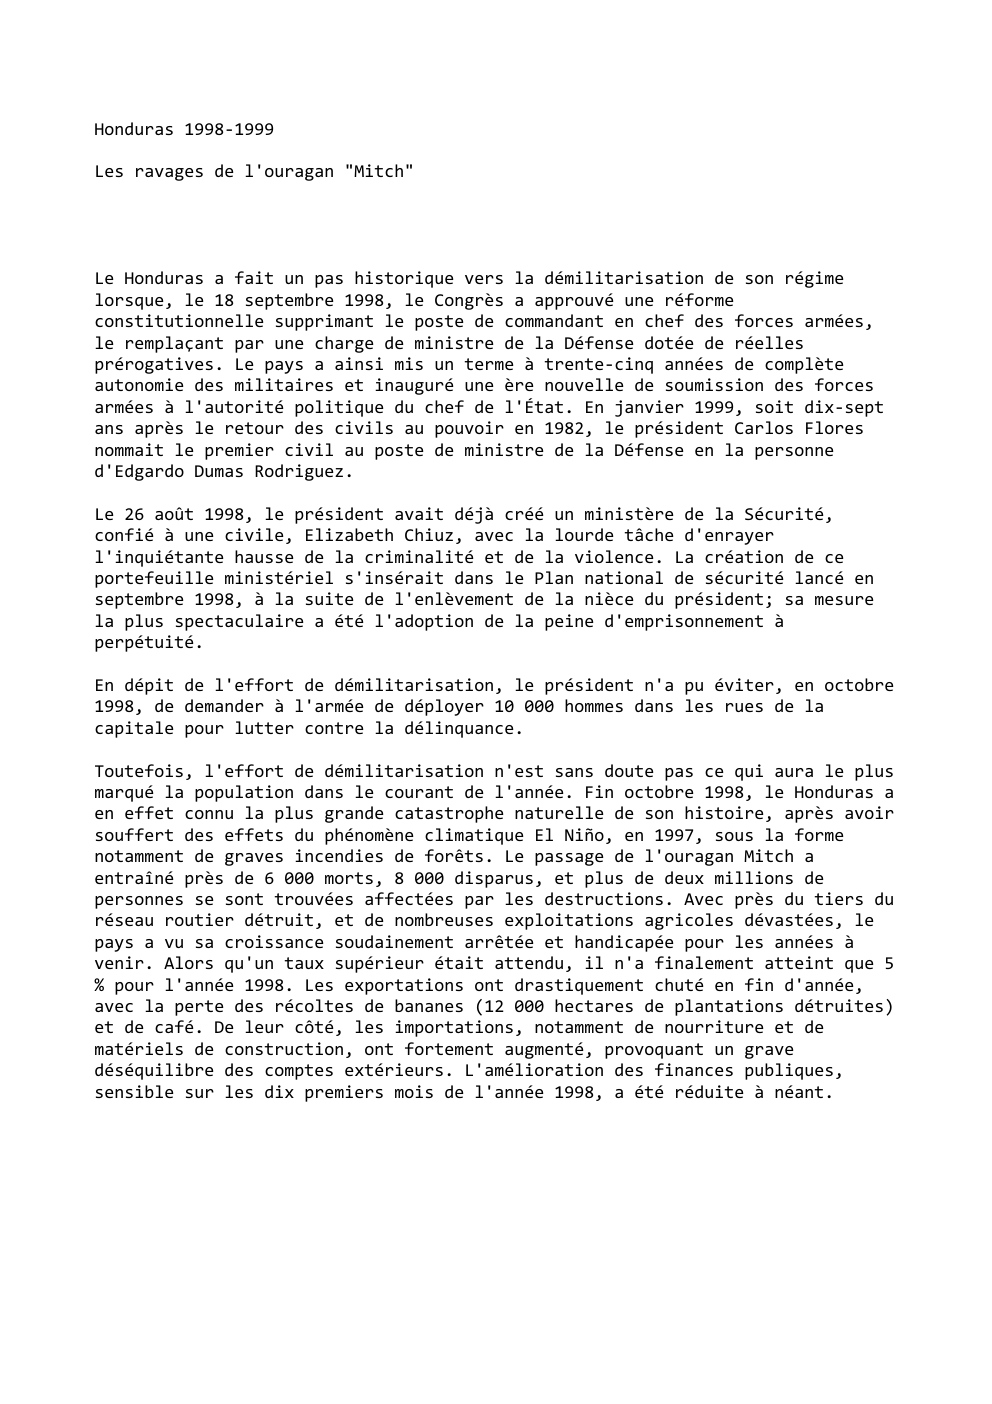 Prévisualisation du document Honduras 1998-1999
Les ravages de l'ouragan "Mitch"

Le Honduras a fait un pas historique vers la démilitarisation de son régime...